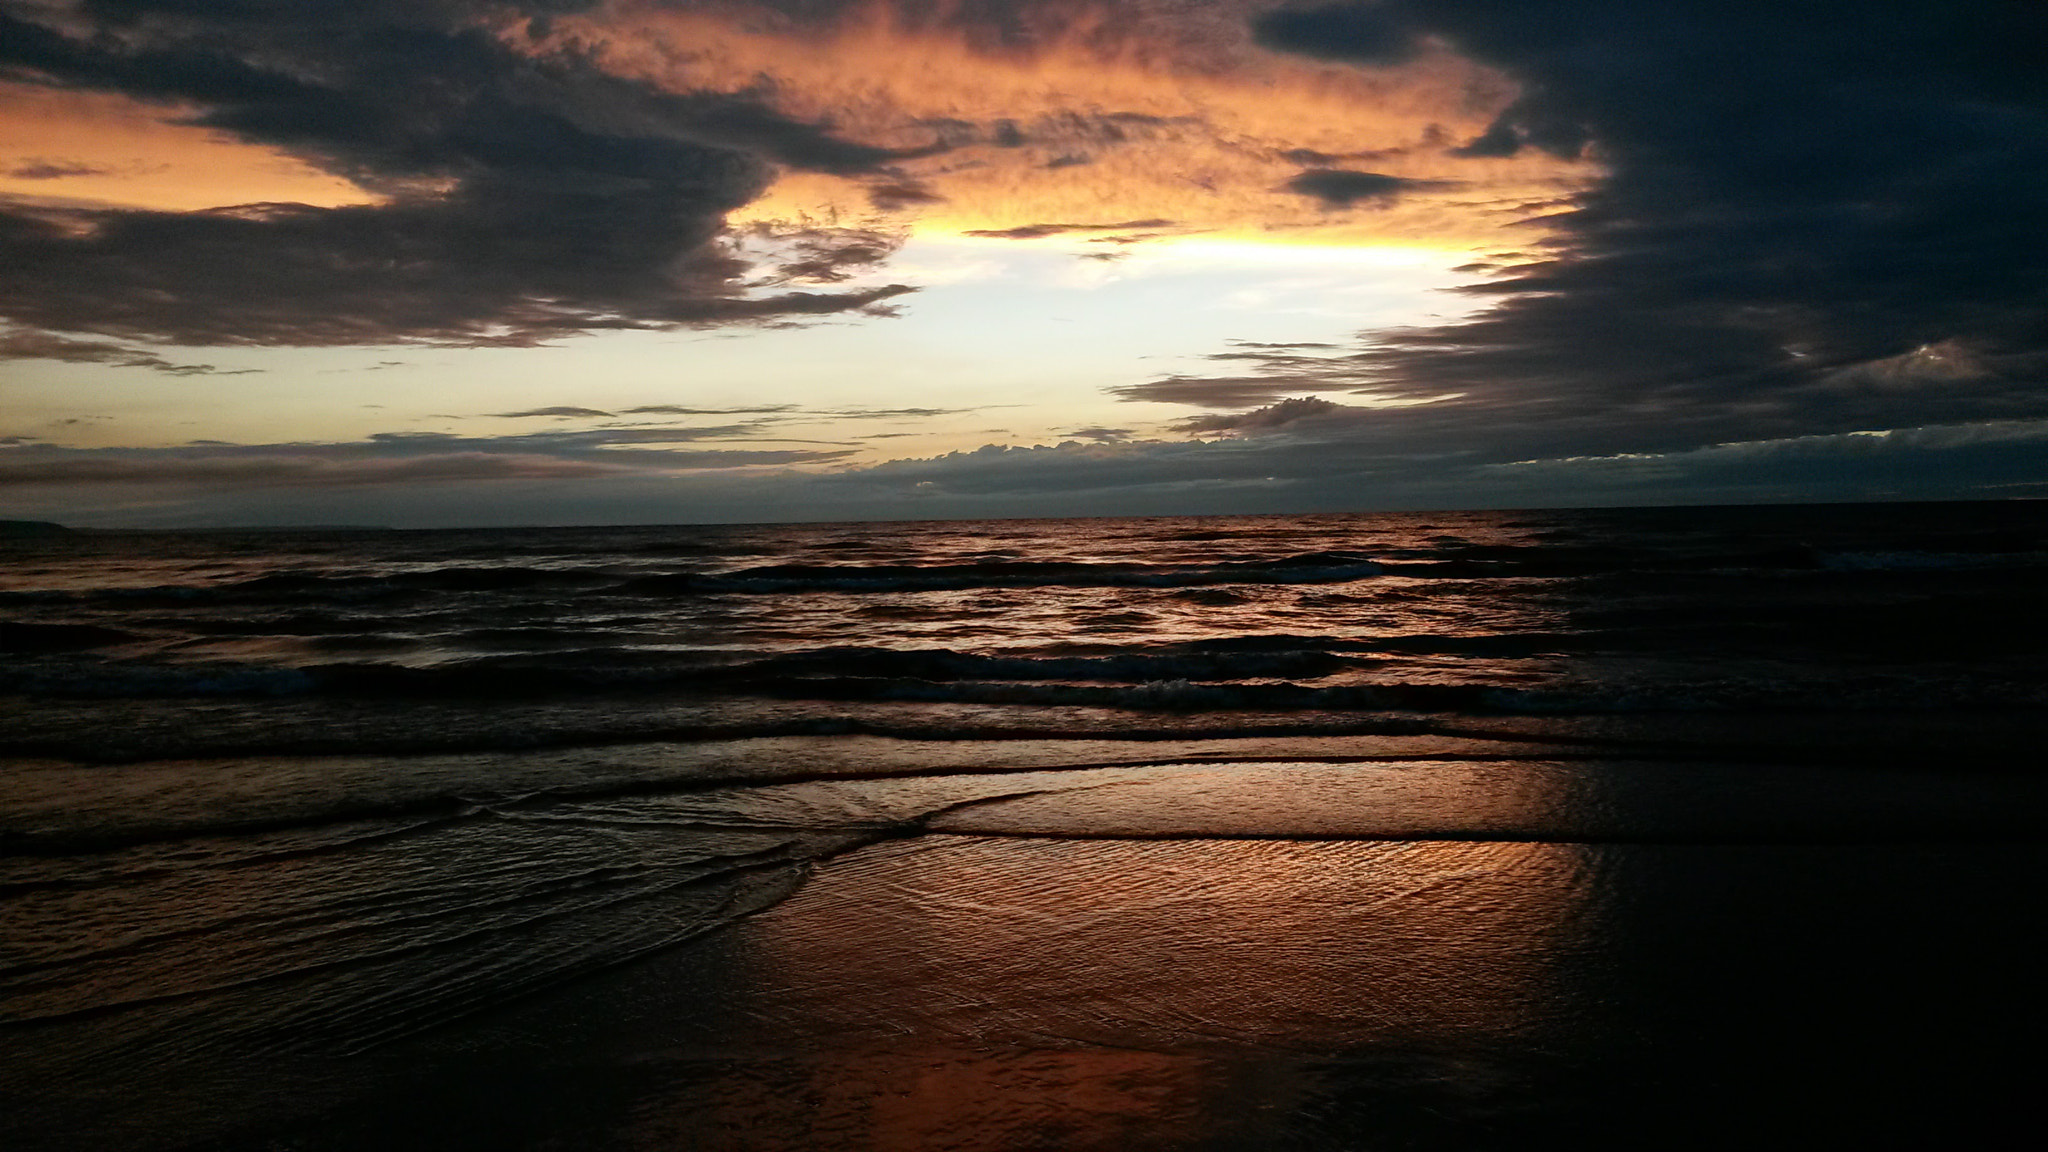 Samsung Galaxy Mega 6.3 sample photo. Wasaga beach sunset photography